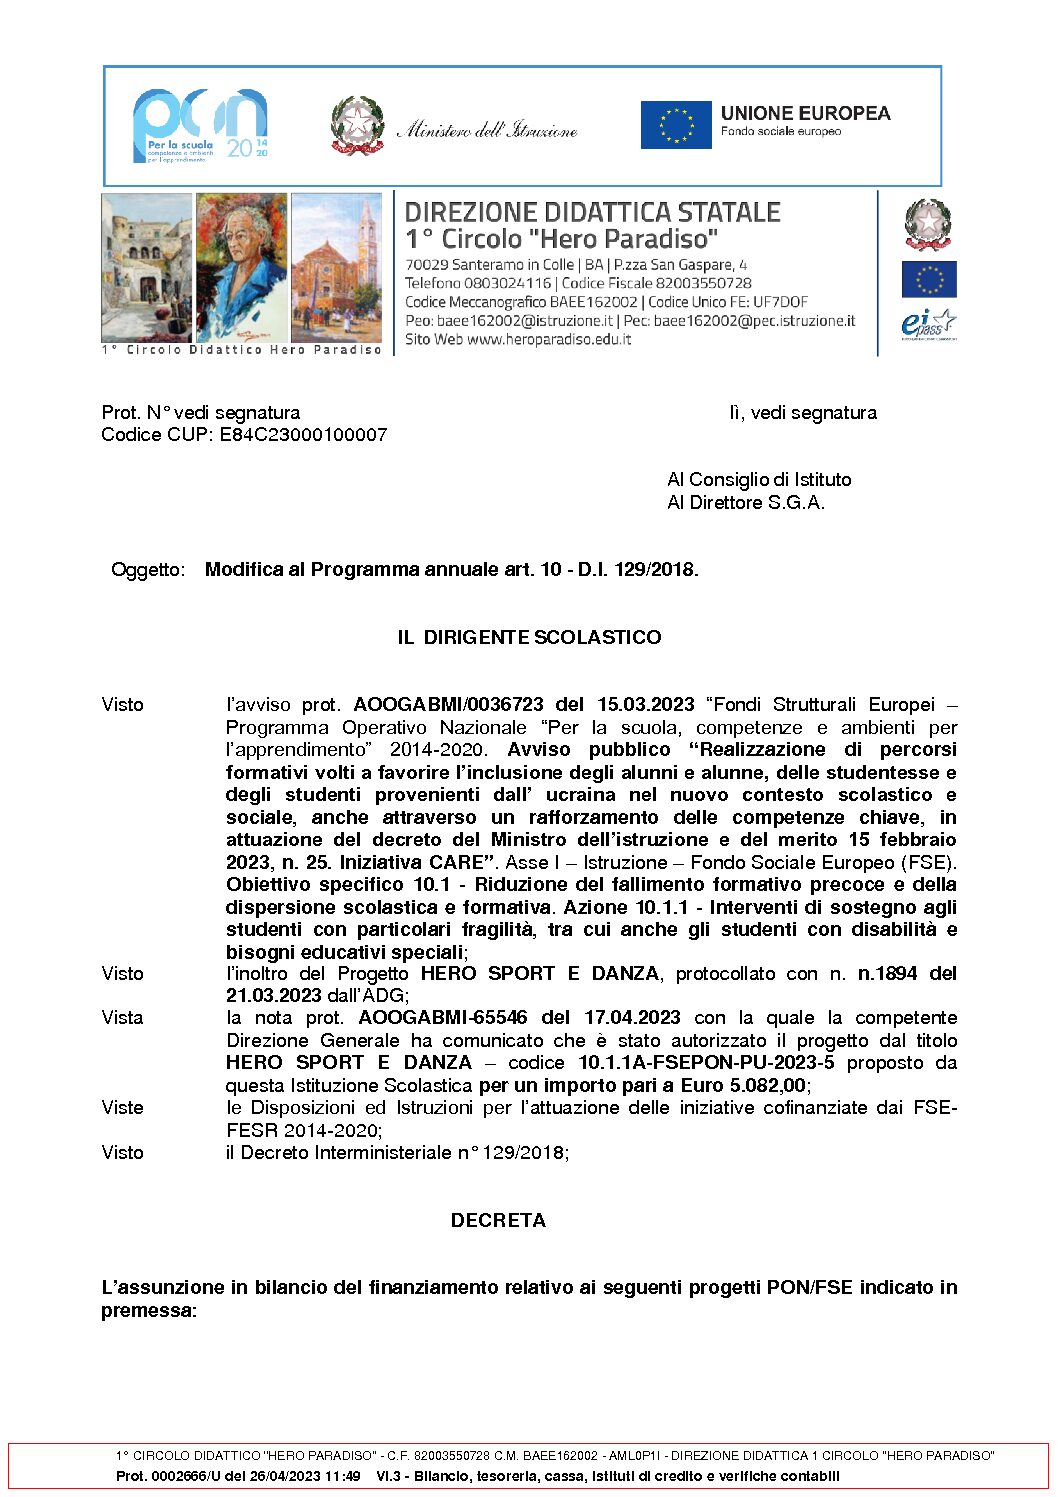 Decreto_assunzione_in_bilancio_PON_2022-5_CARE.pdf.pades